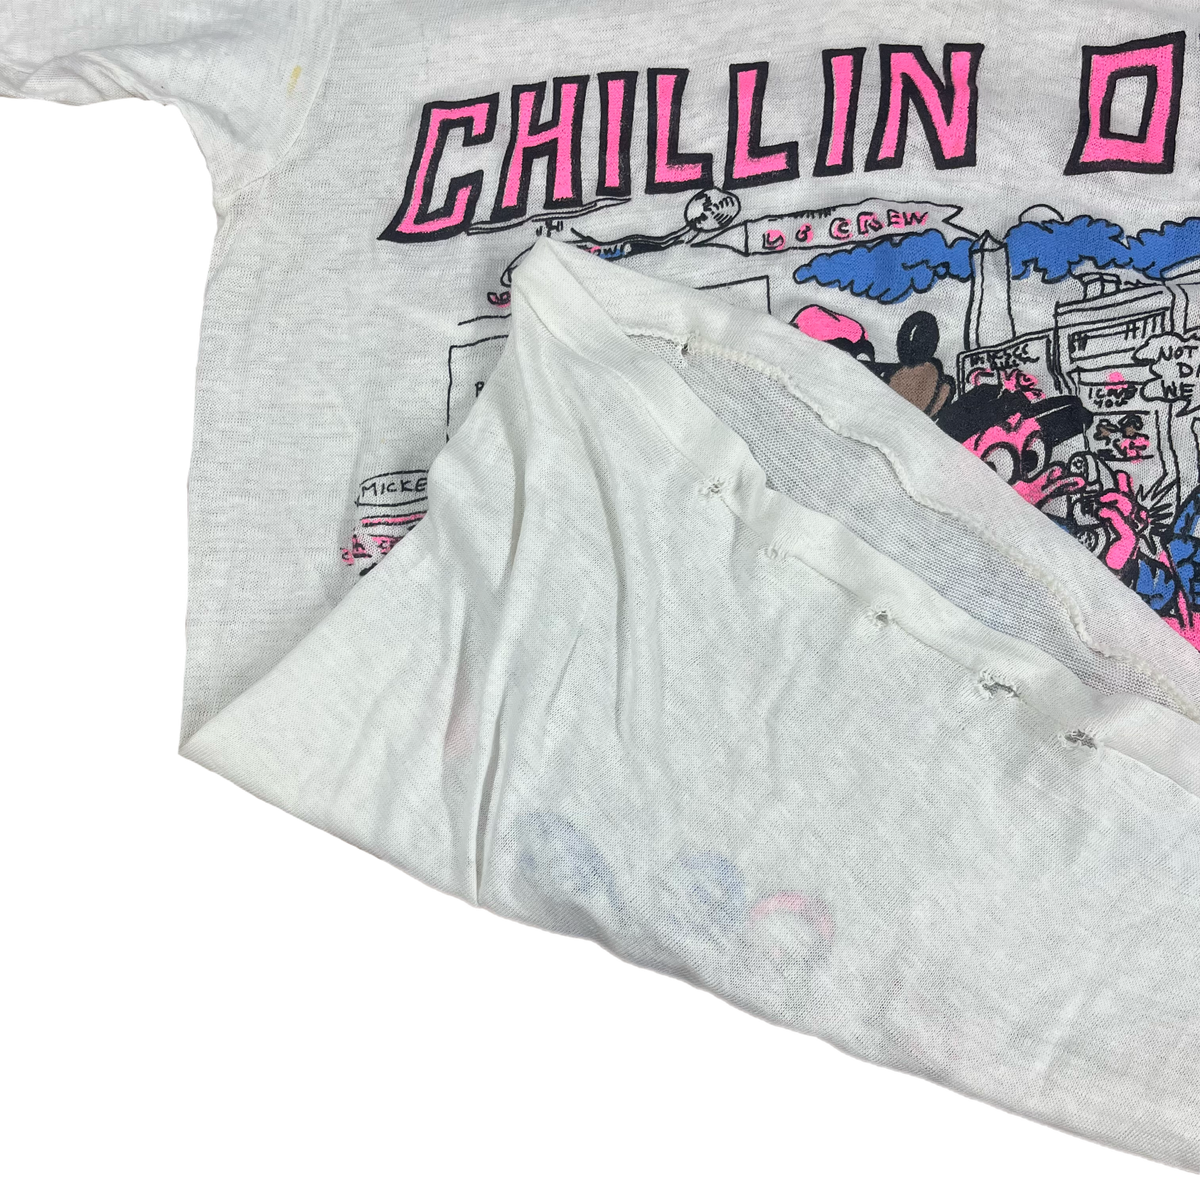 Vintage Washington, D.C. “Chillin’ Out” GOGO T-Shirt